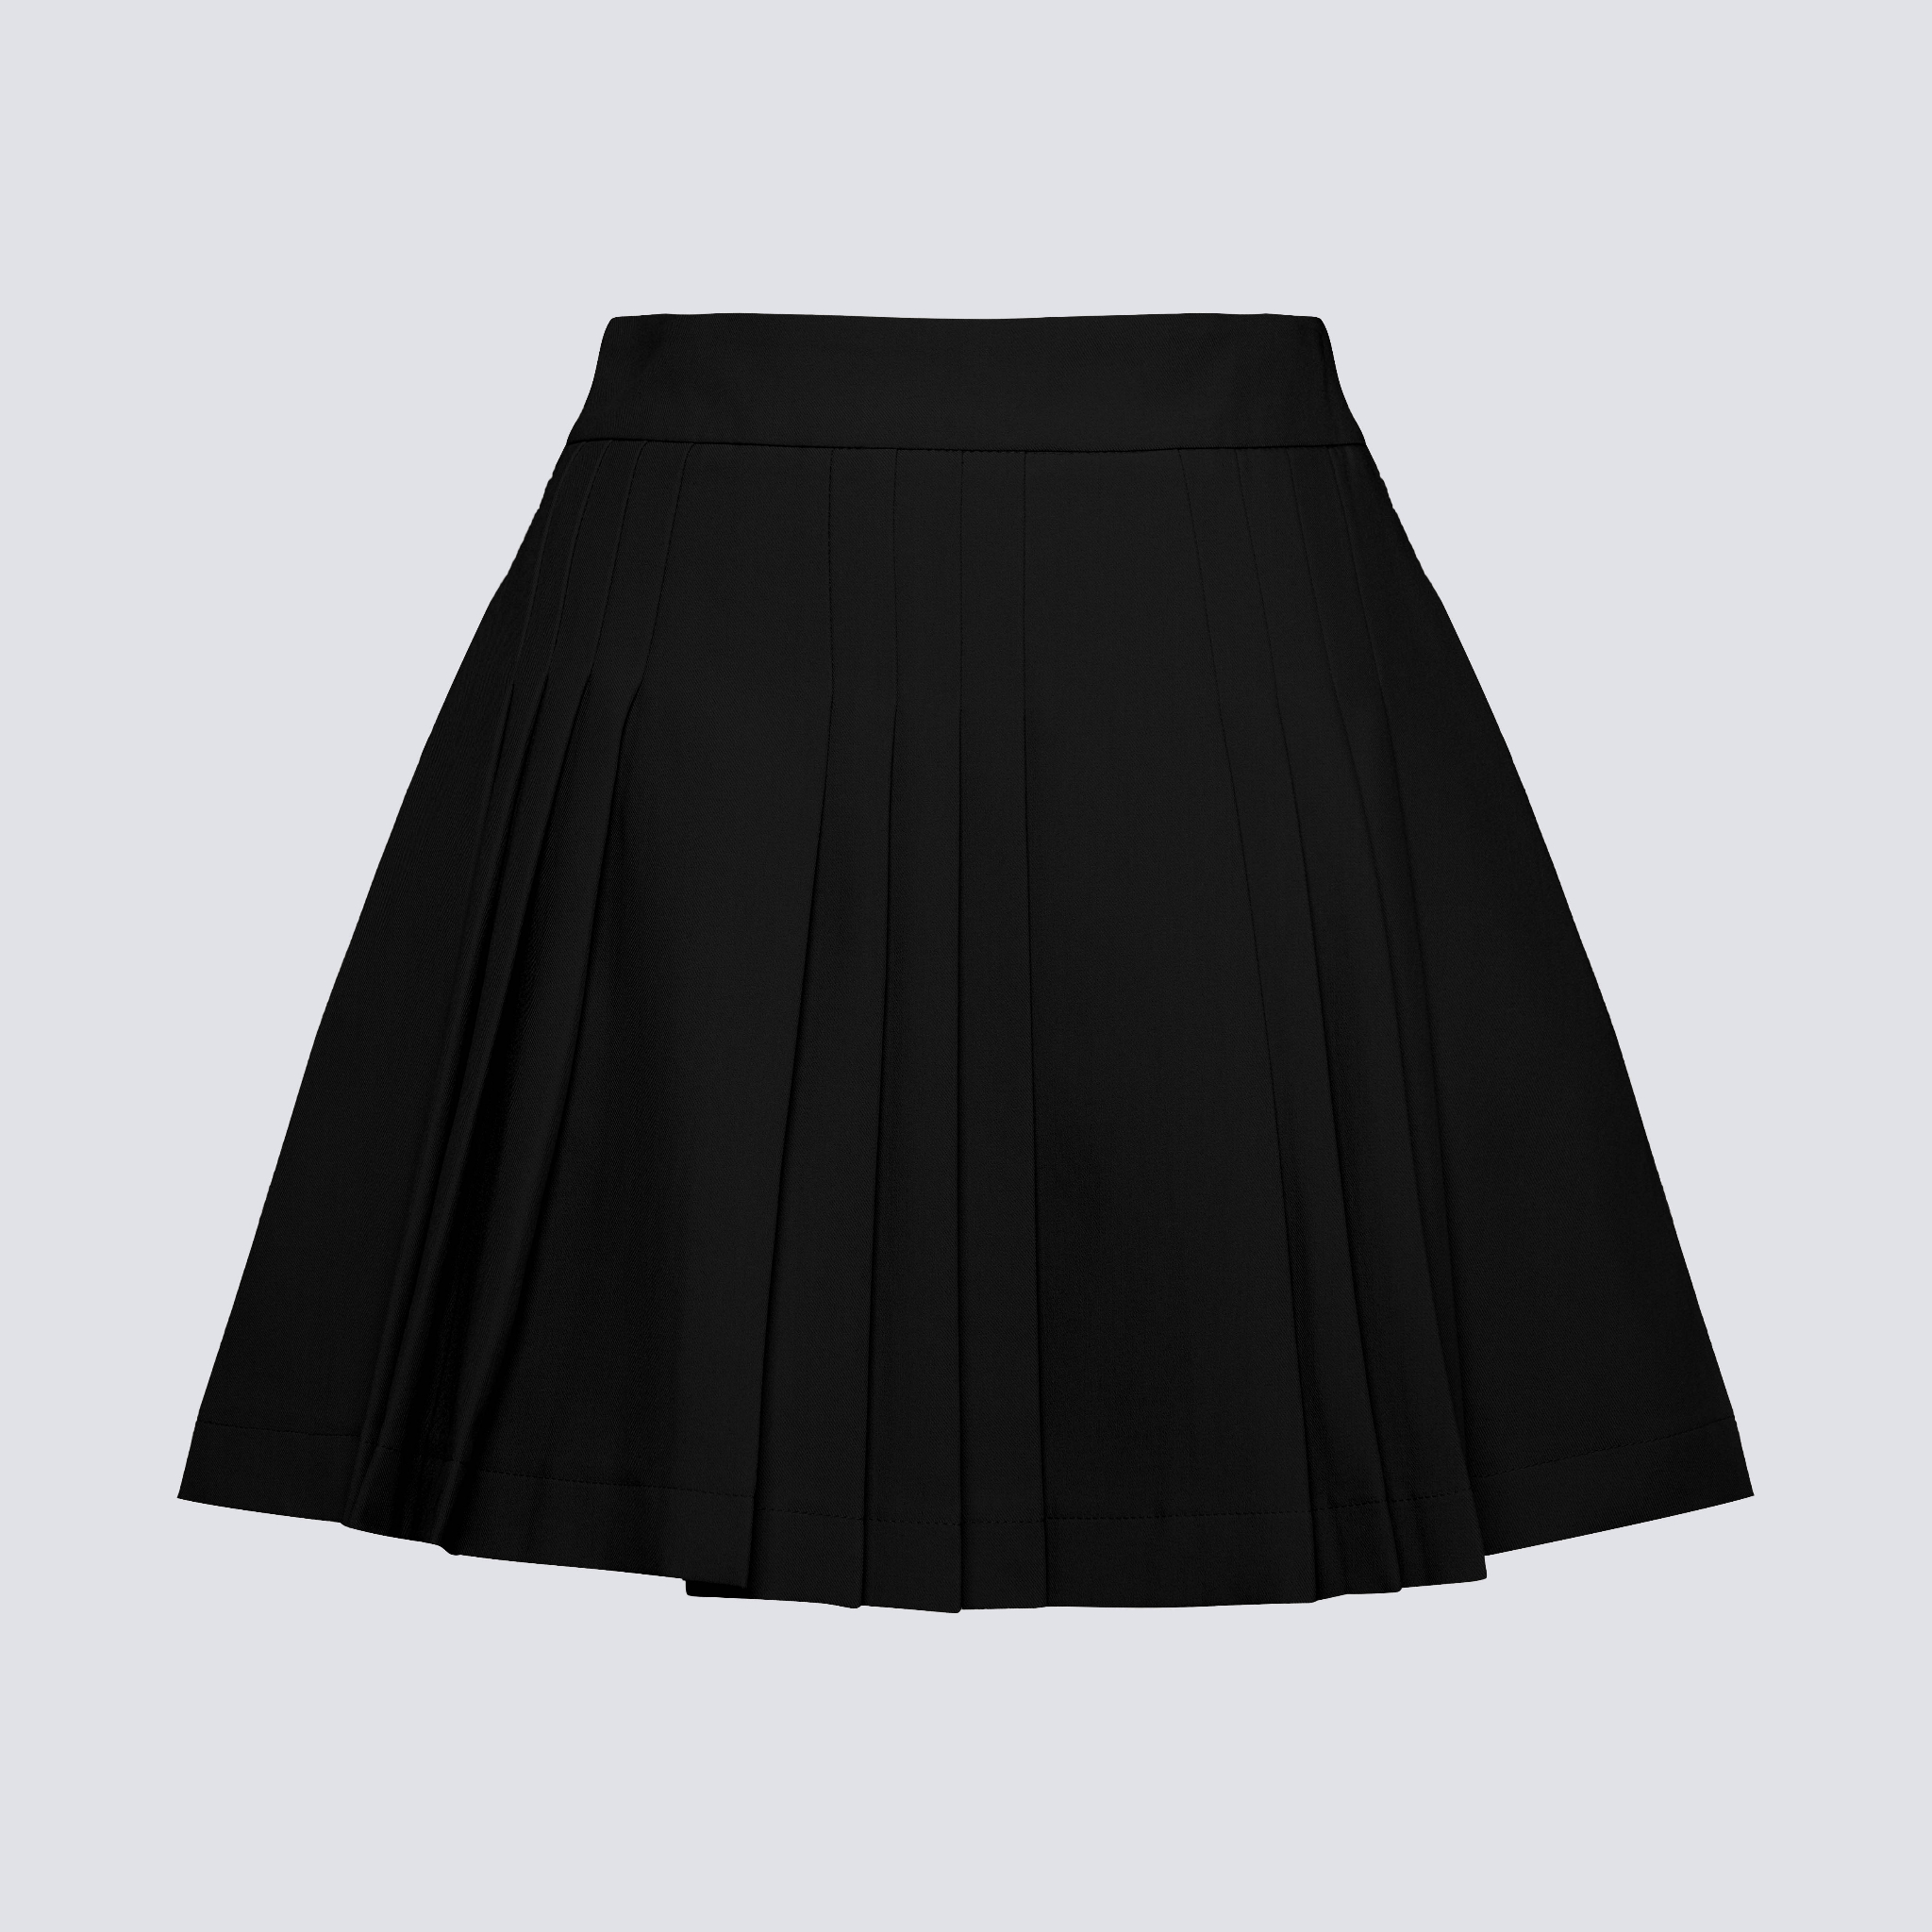 Chân váy tennis xếp ly màu trắng đen xếp li skirt cạp lưng cao ngắn chữ a  phối cúc phong cách ulzzang - Q404